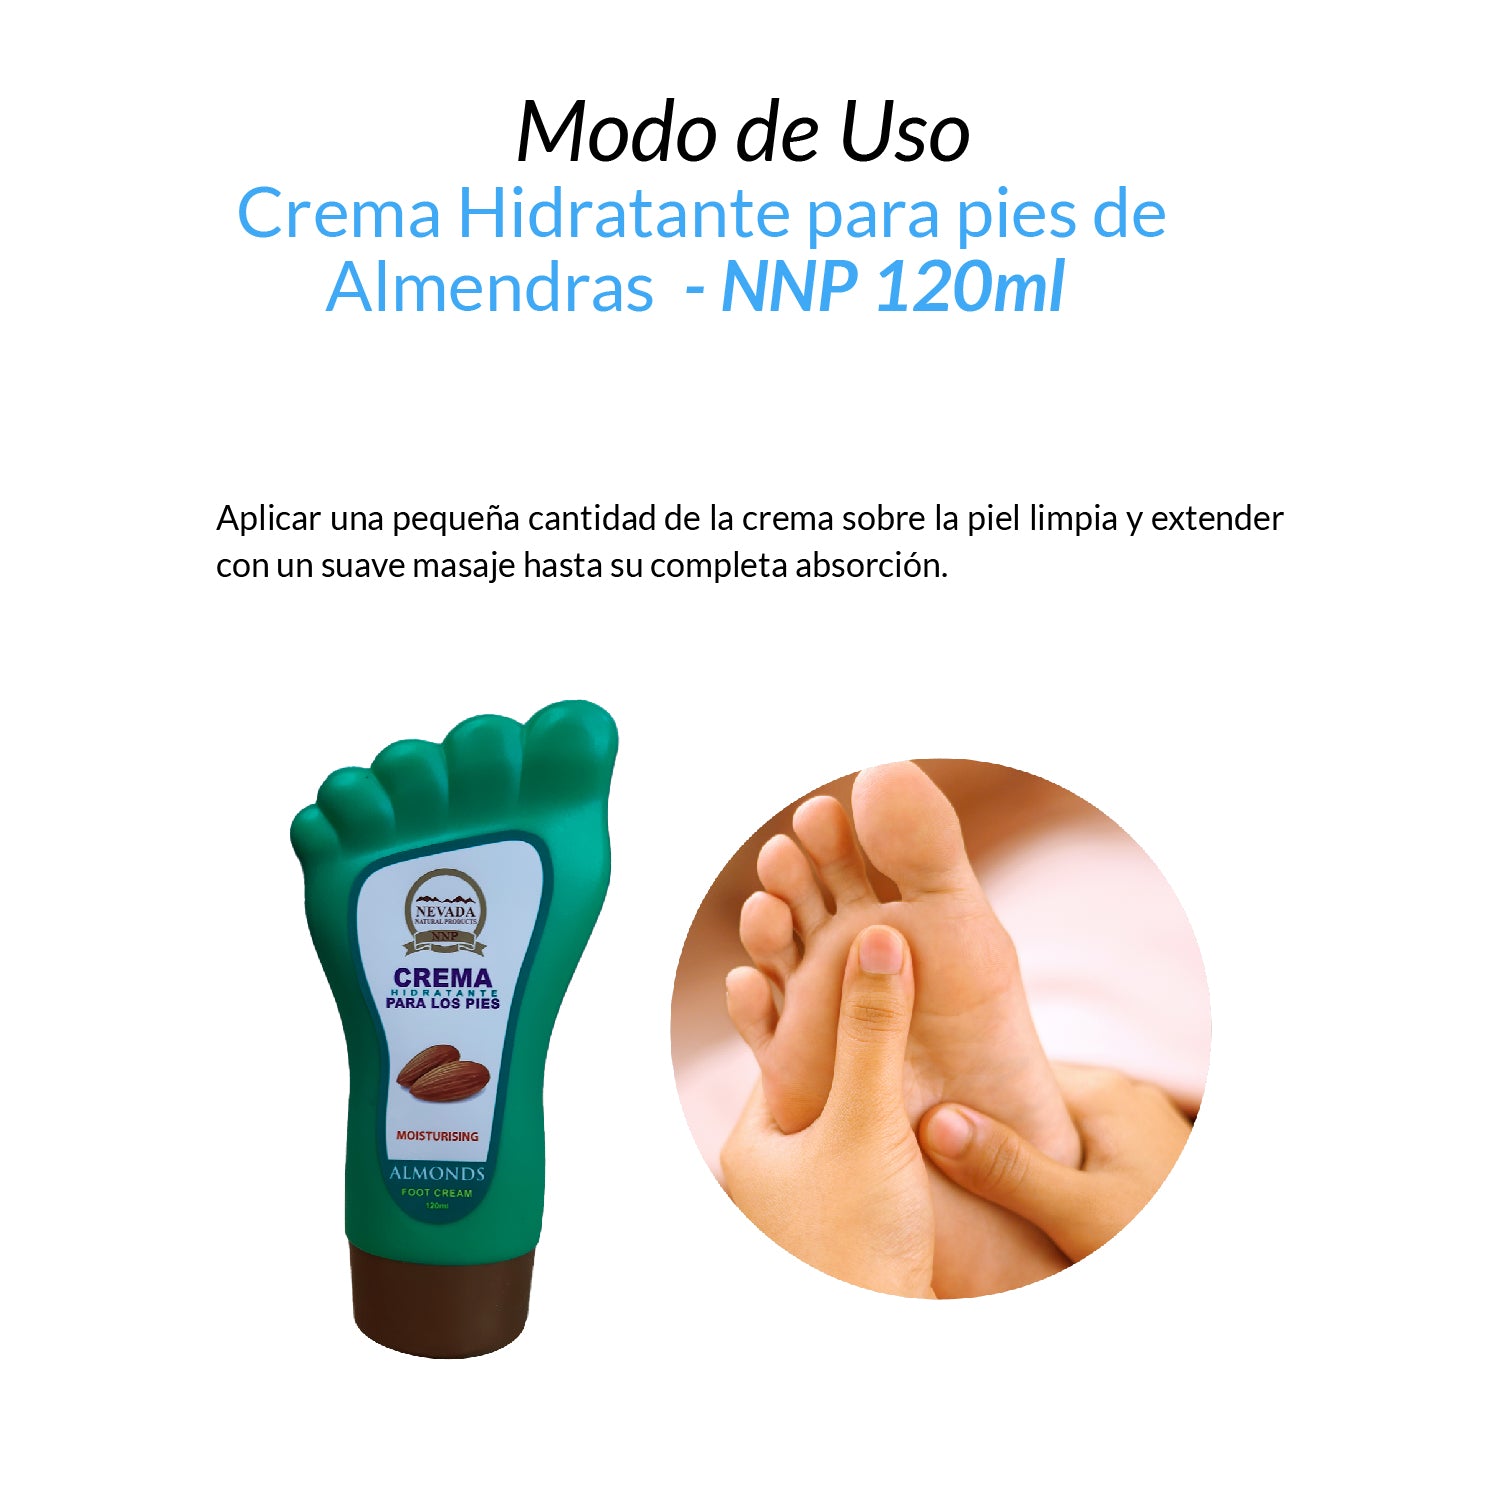 Crema Hidratante para pies de Almendras - NNP 120ml